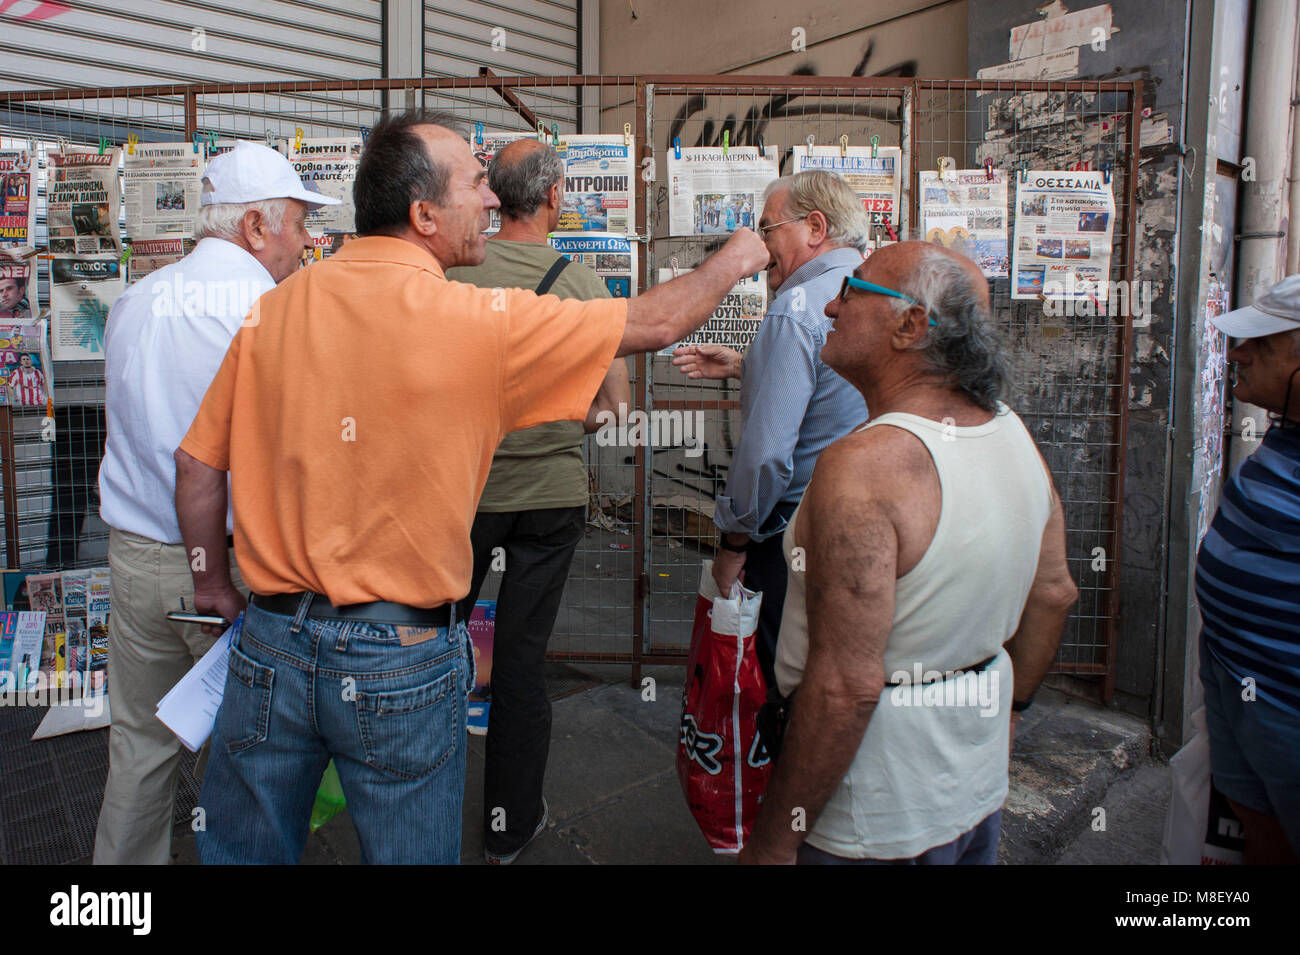 Athènes. Les personnes âgées de discuter au sujet du référendum, la place Omonia. La Grèce. Banque D'Images